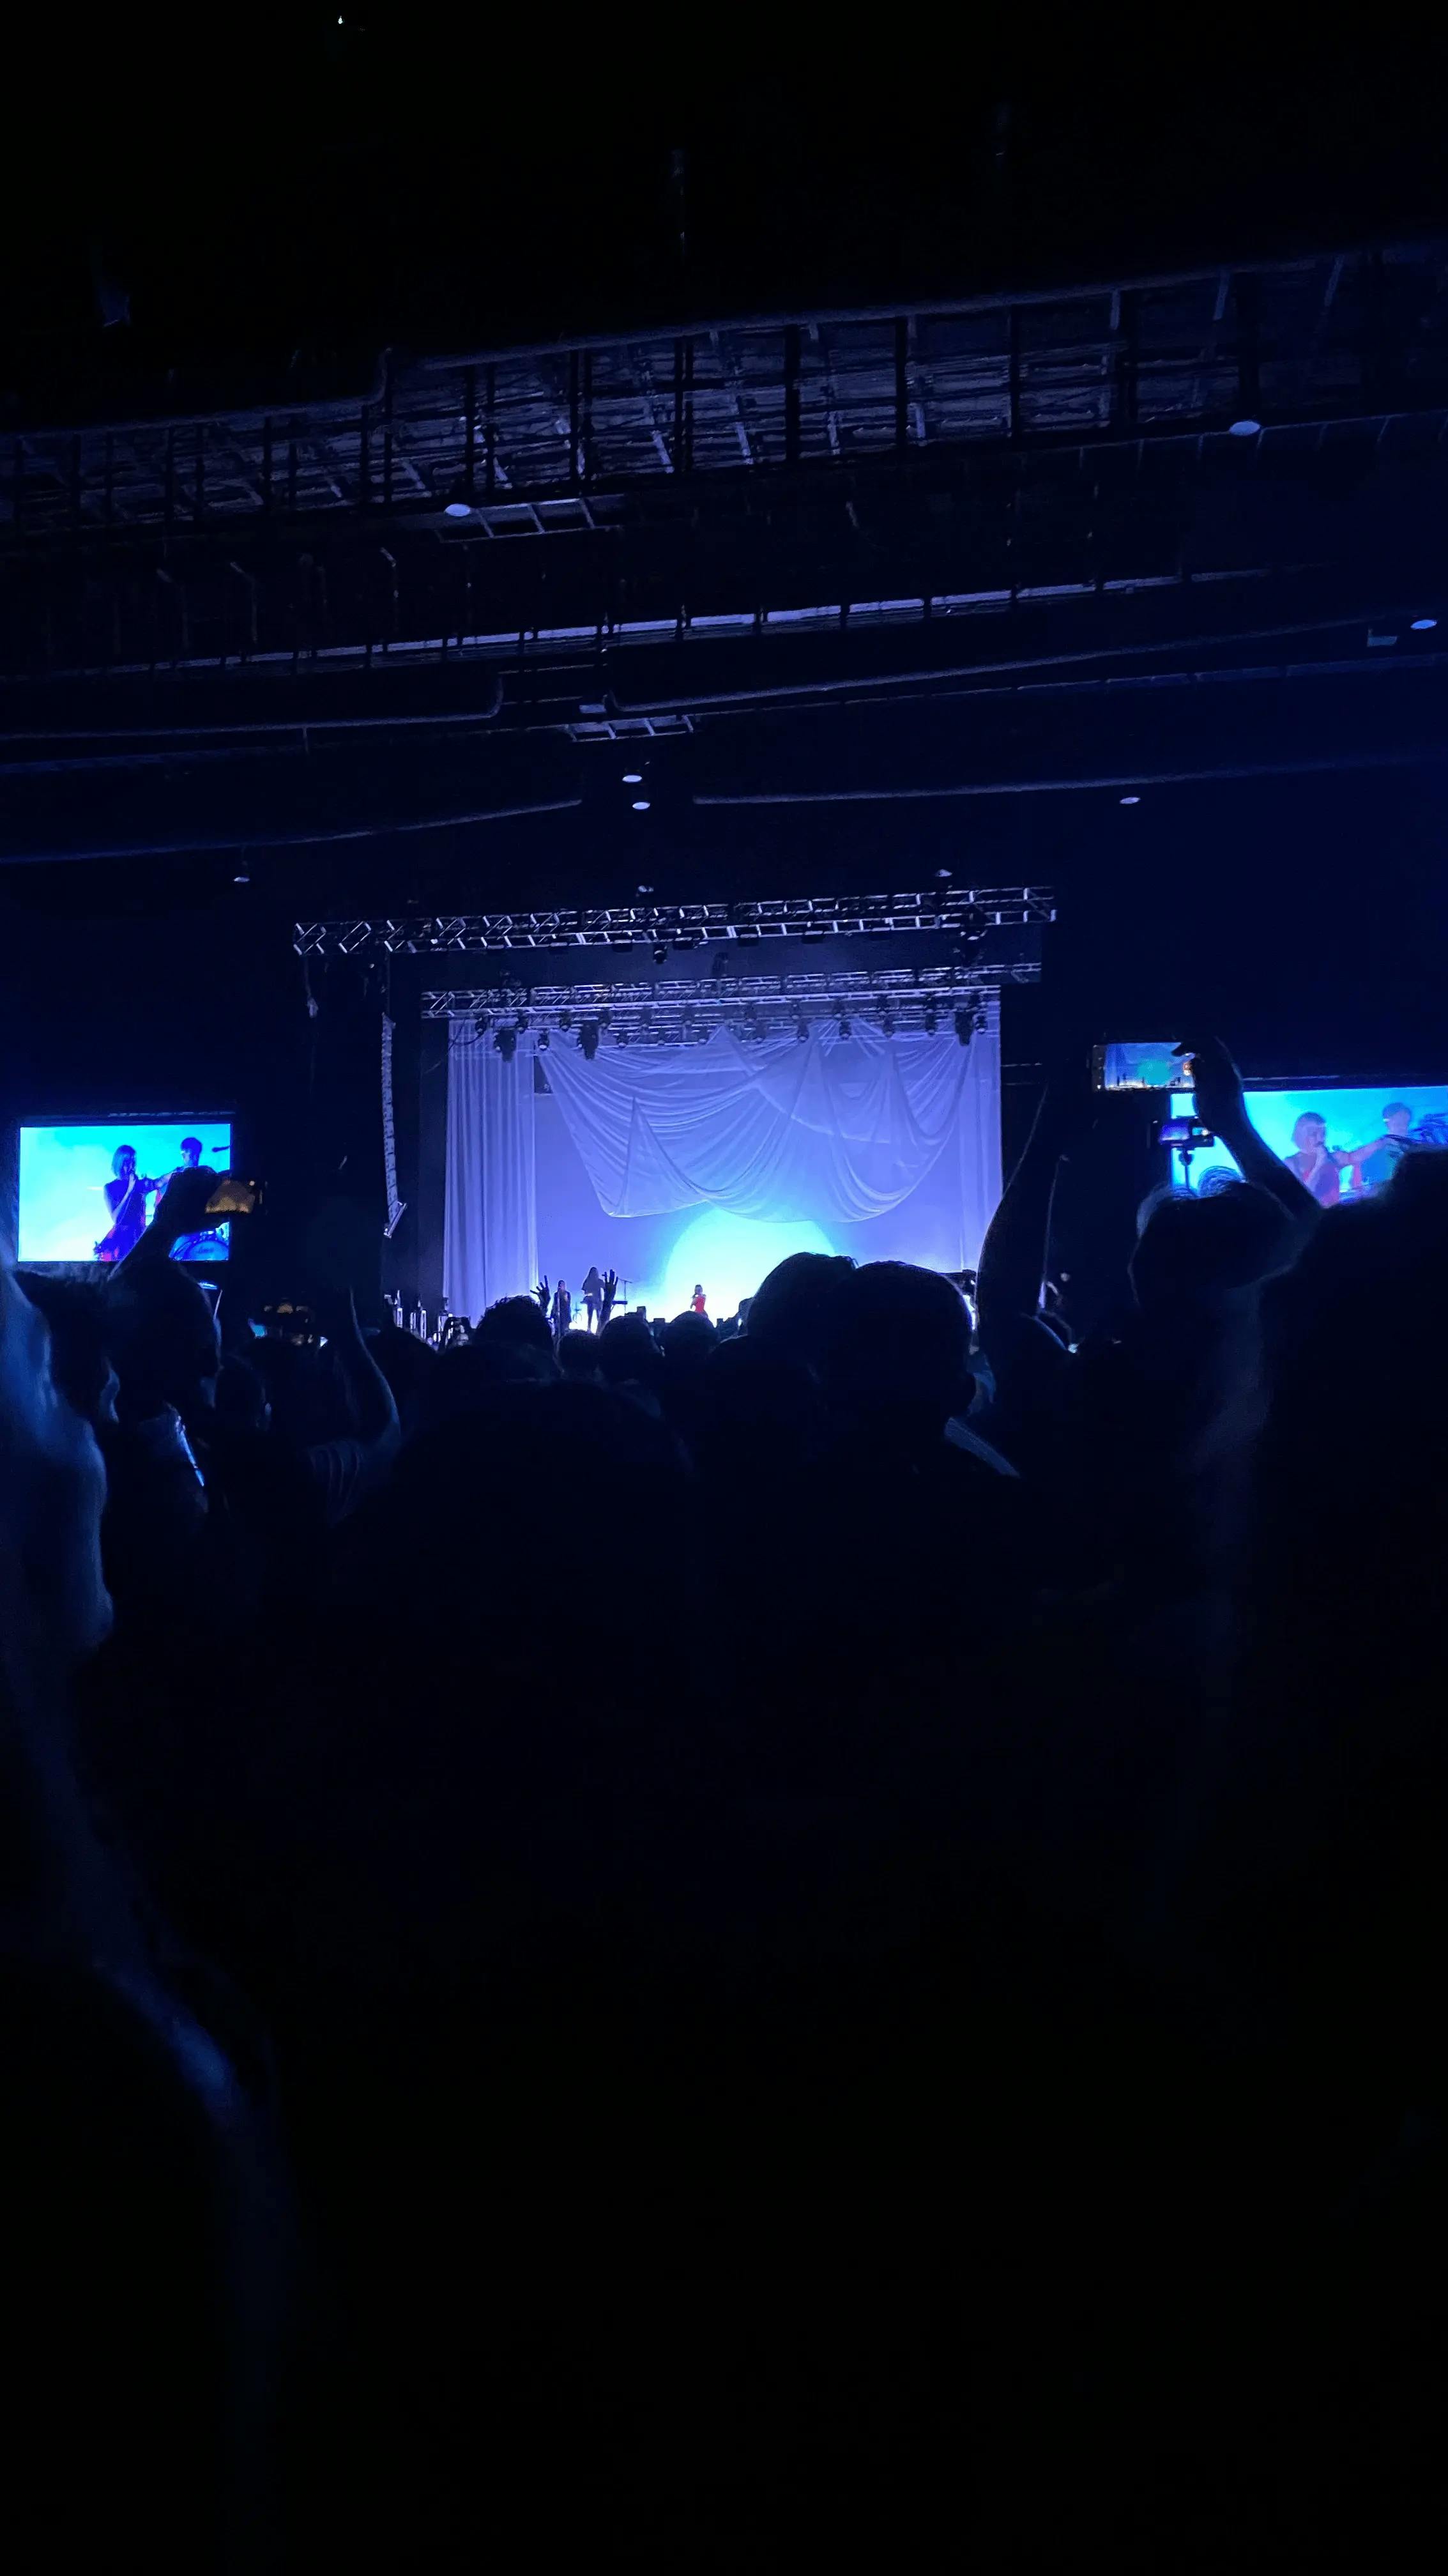 Fotografía del escenario en un concierto de Aurora tomada desde el público.